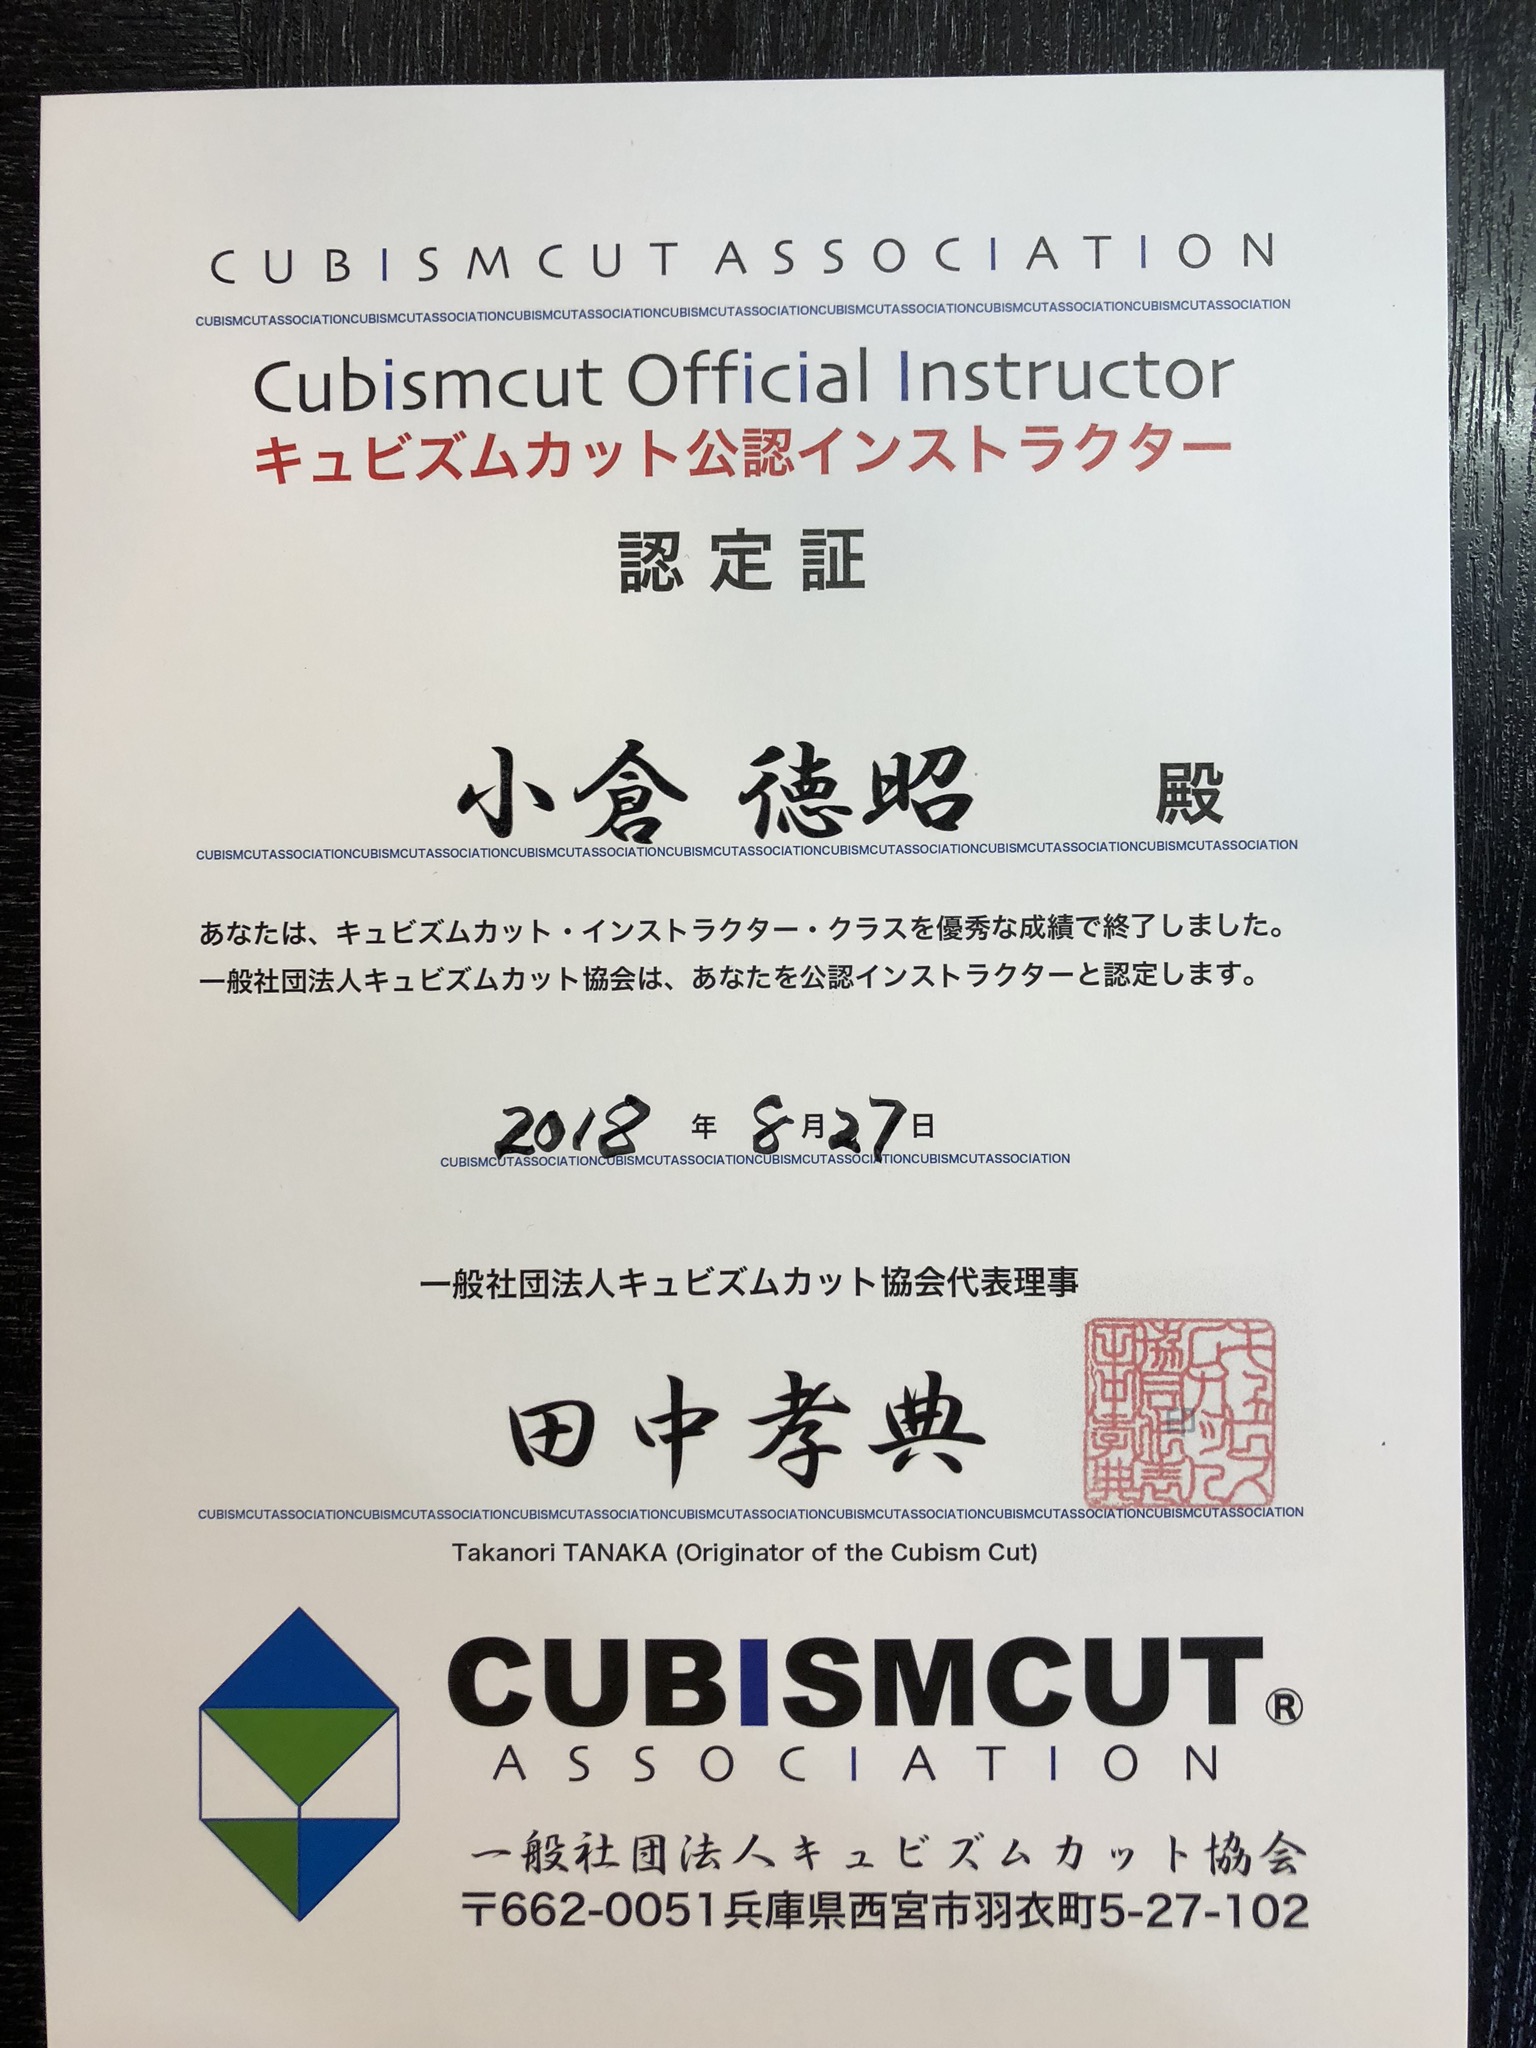 千葉【蘇我】でキュビズムカット体験講習会を開催します。